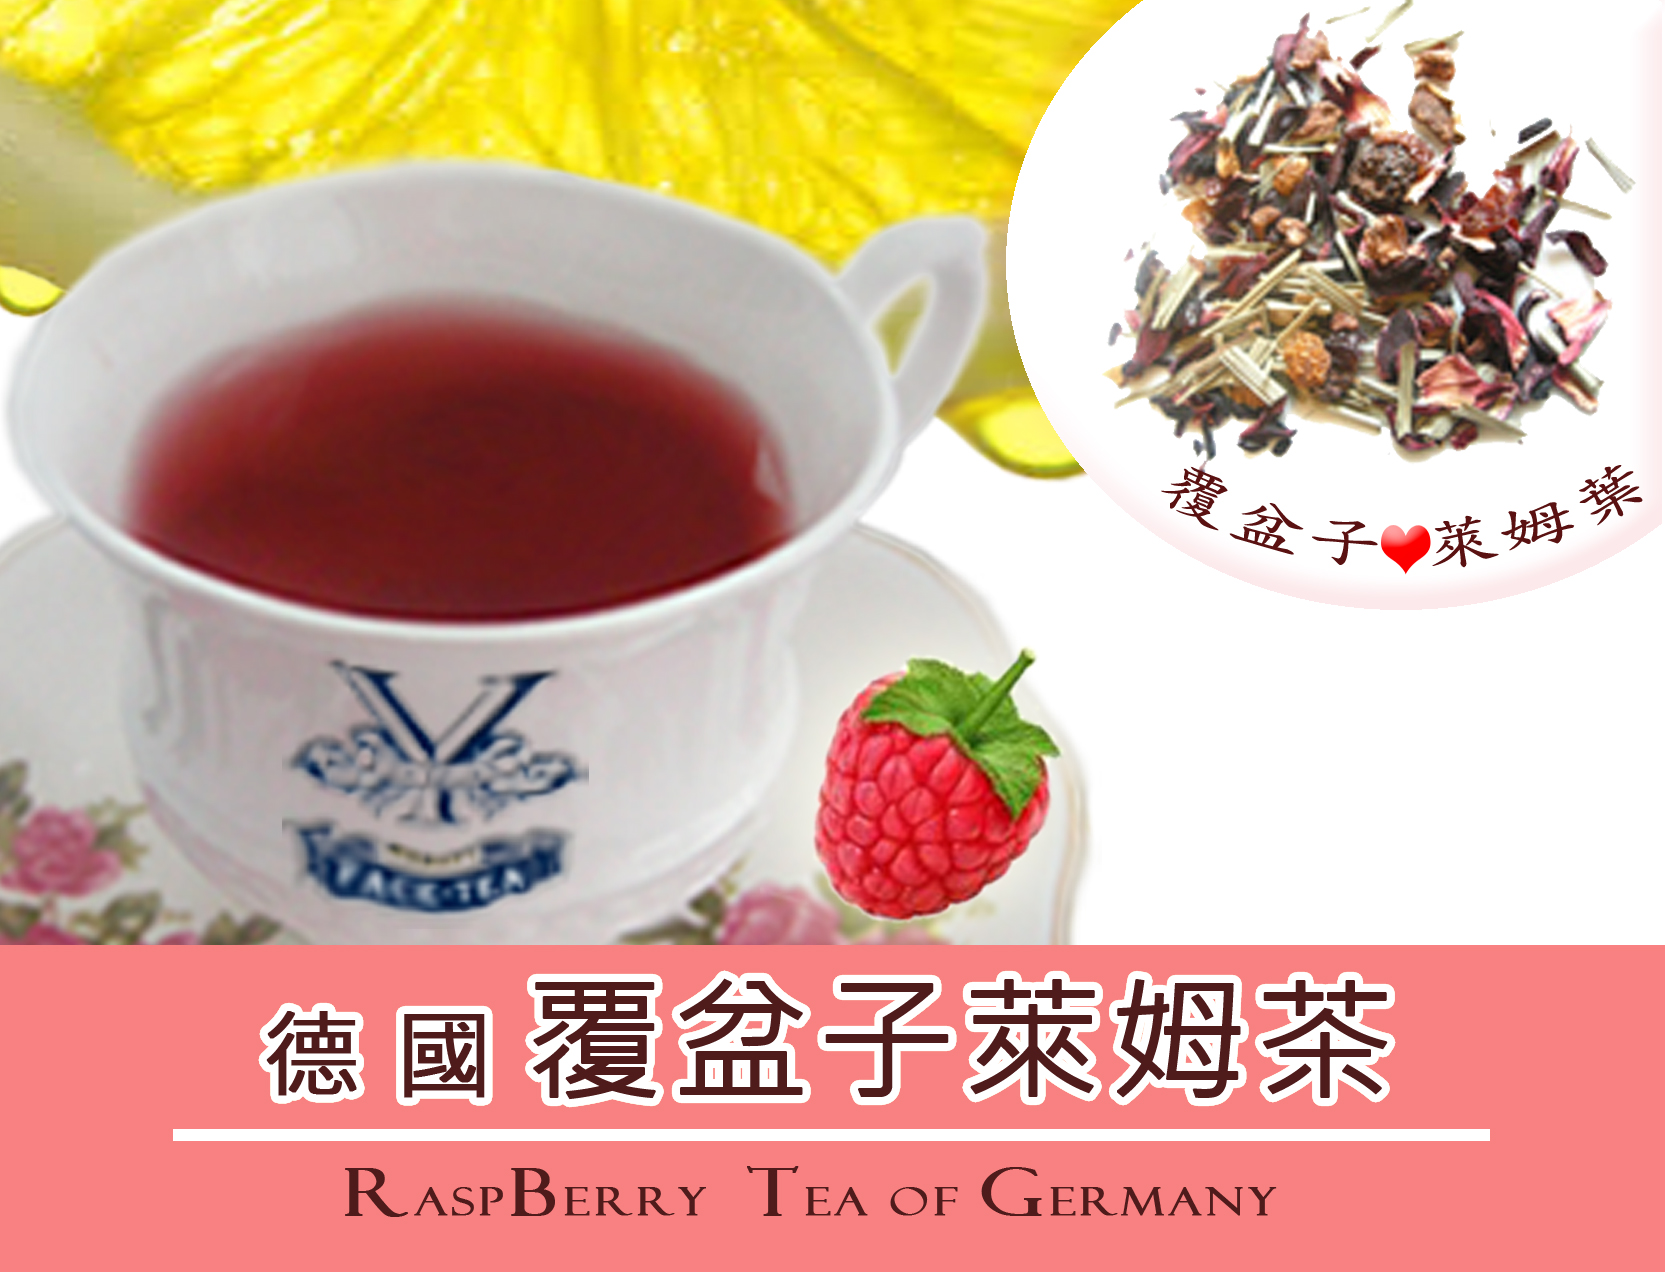 德國覆盆子萊姆茶 Raspberry Lime Tea-Grain